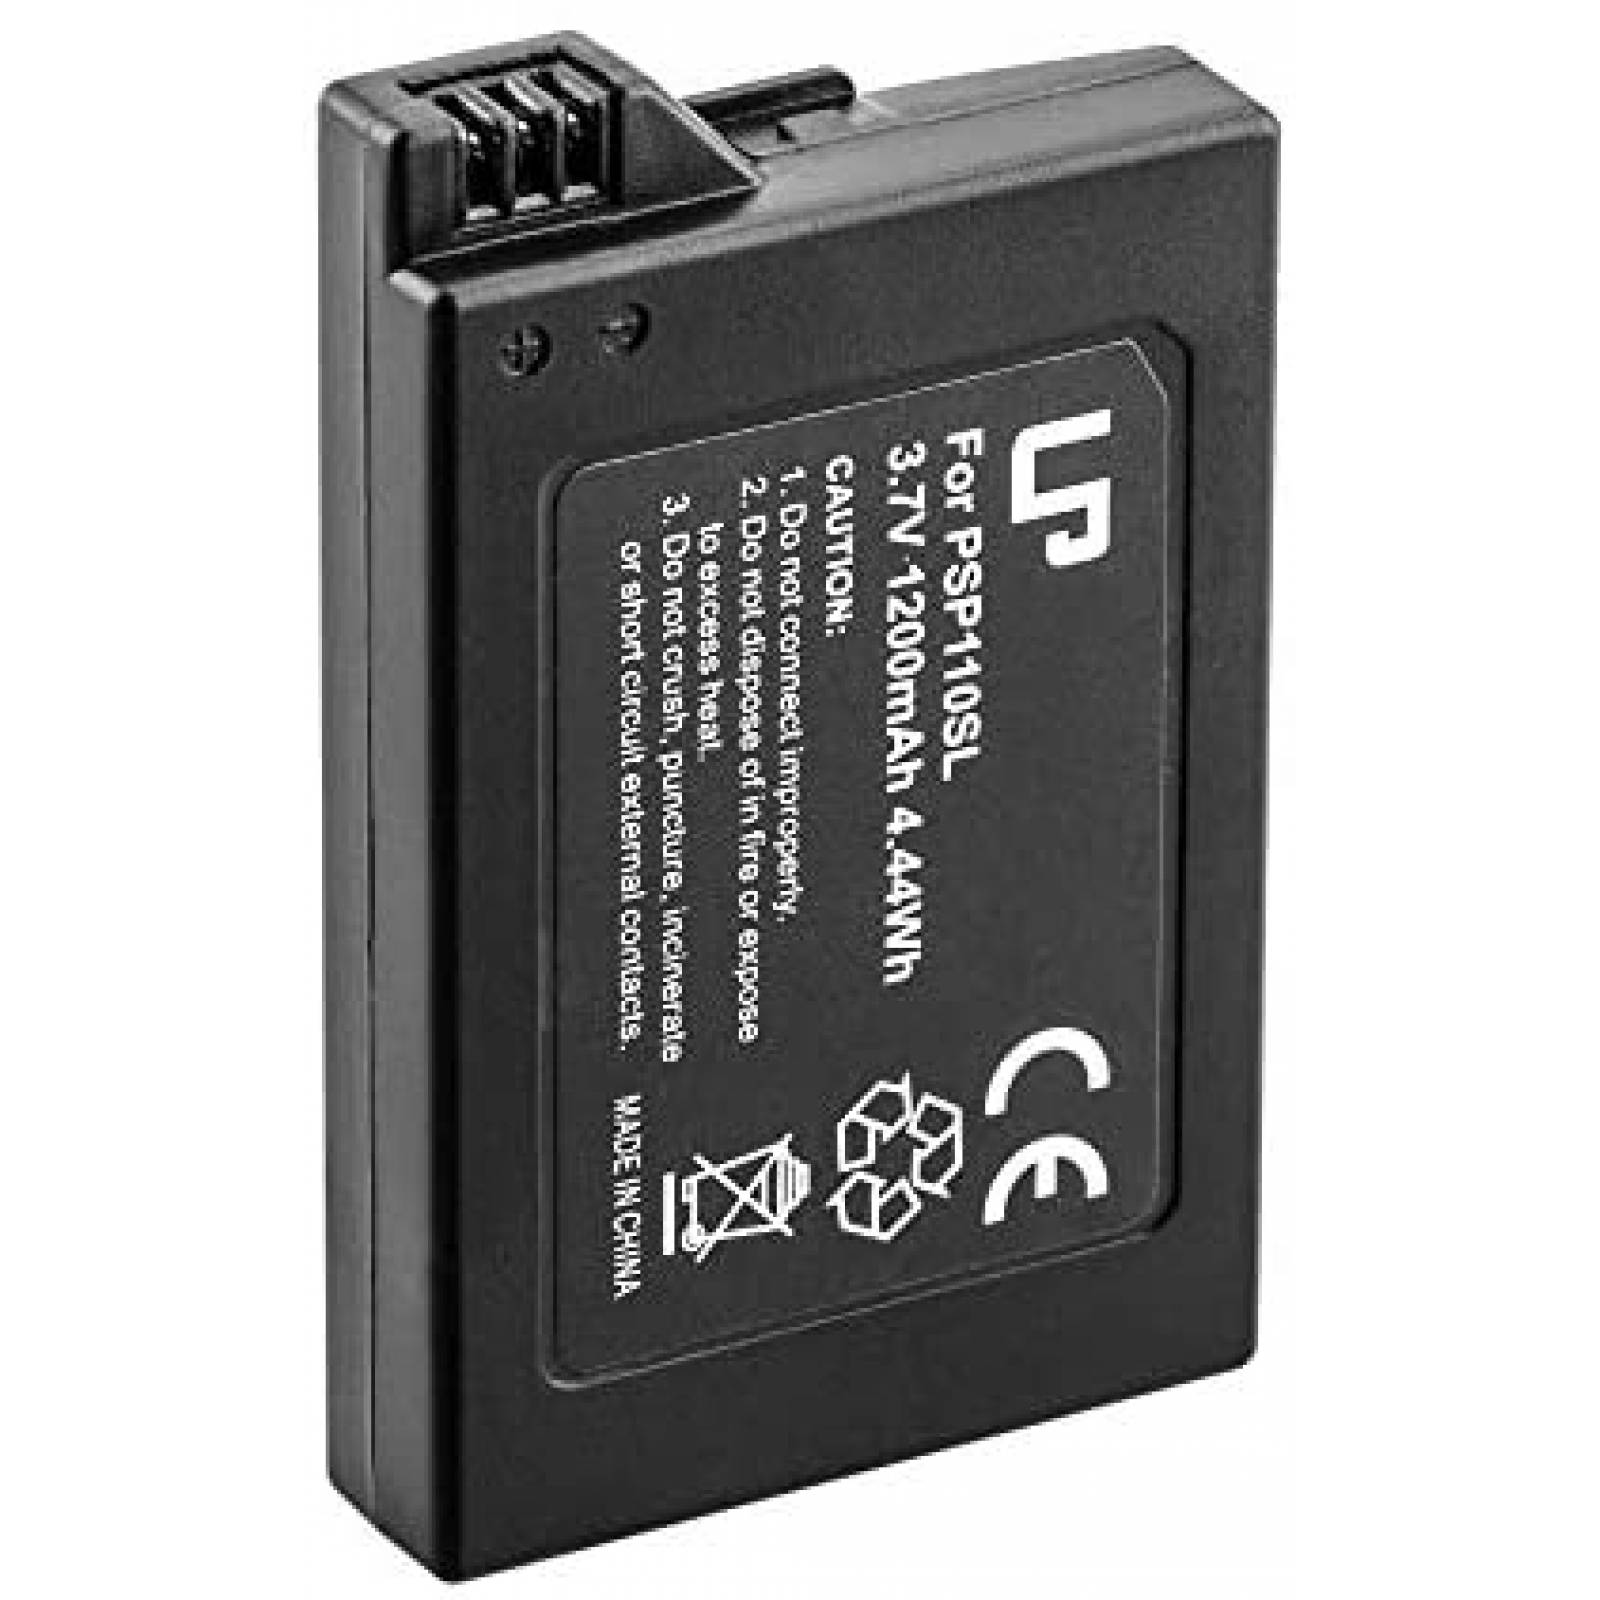 LP Batería PSP S110, paquete de 1 batería recargable de iones de litio de  3.7 V 1200 mAh, compatible con Sony Play Station PSP 3000, serie PSP 2000